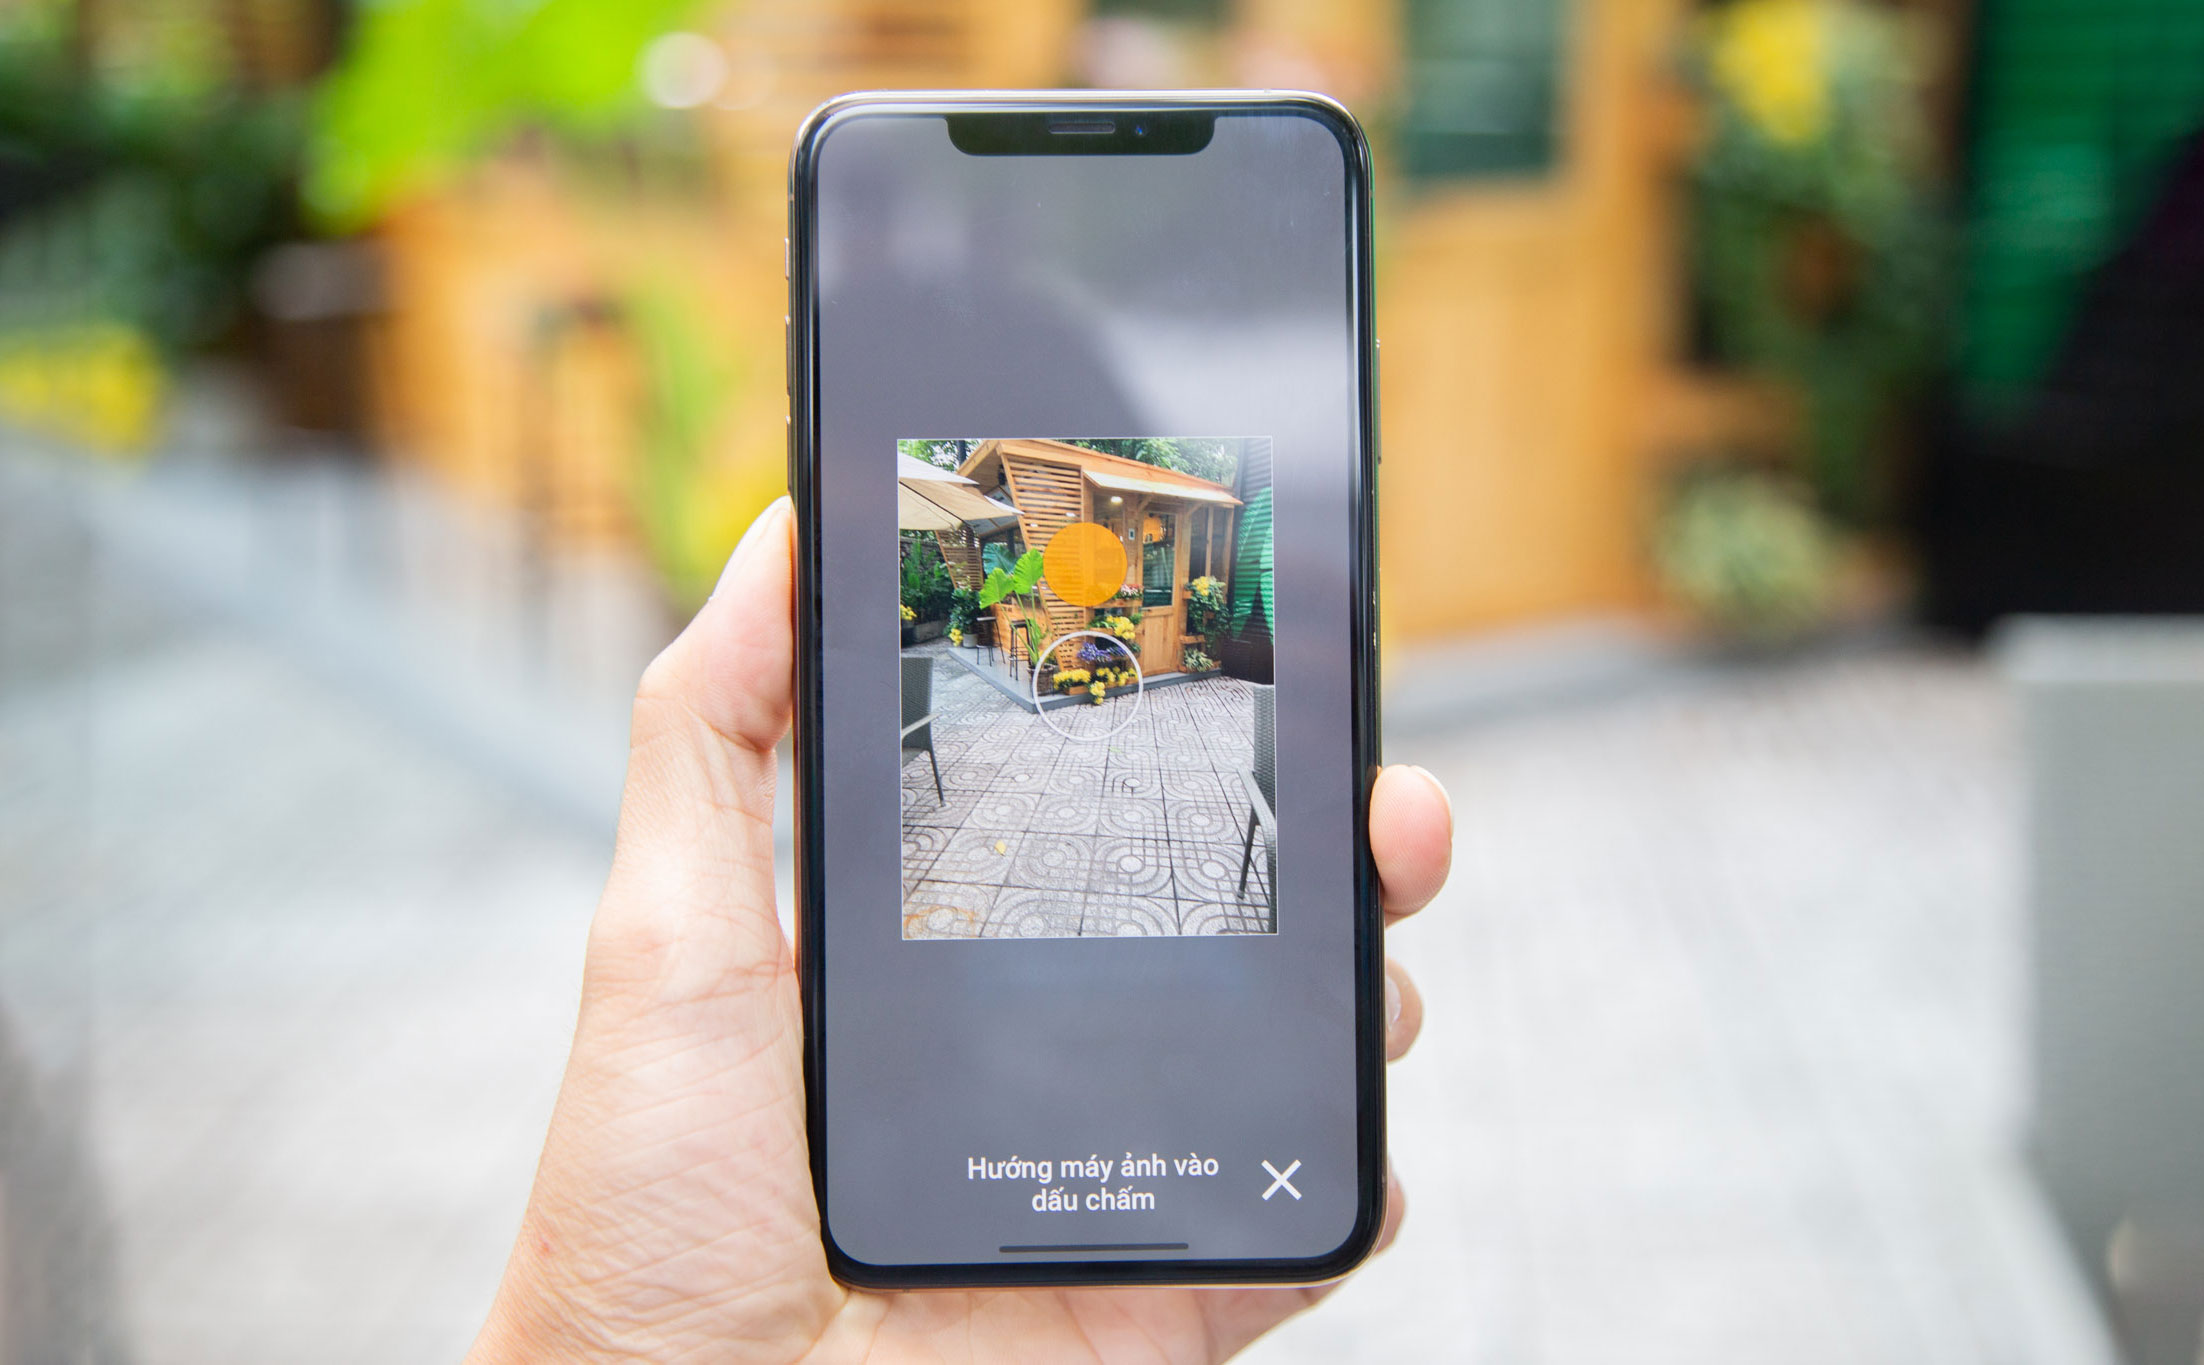 Hướng dẫn cách chụp ảnh 360 độ trên điện thoại Iphone và Android